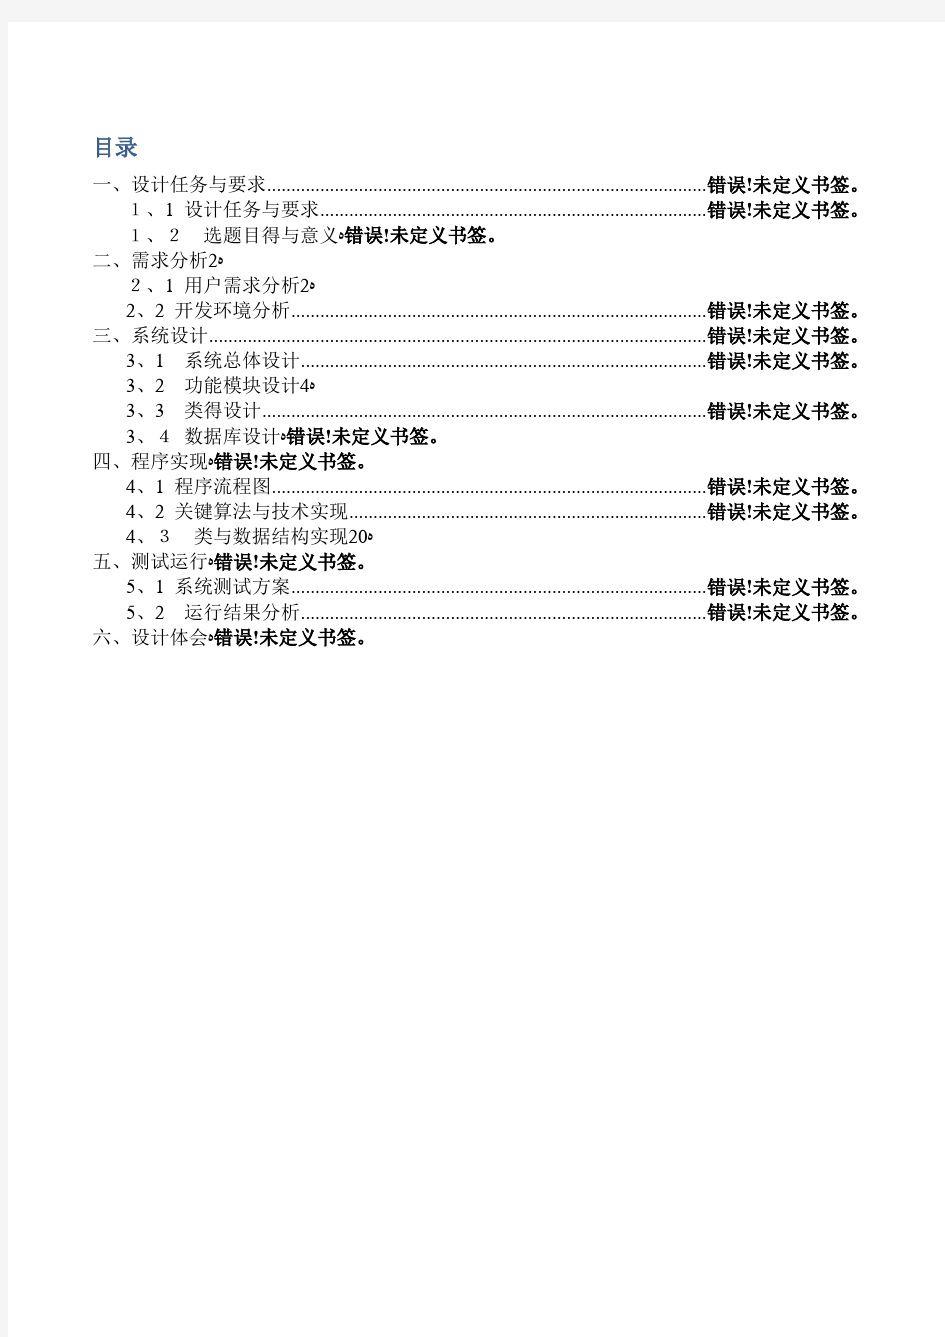 JAVA电子英汉词典课程设计